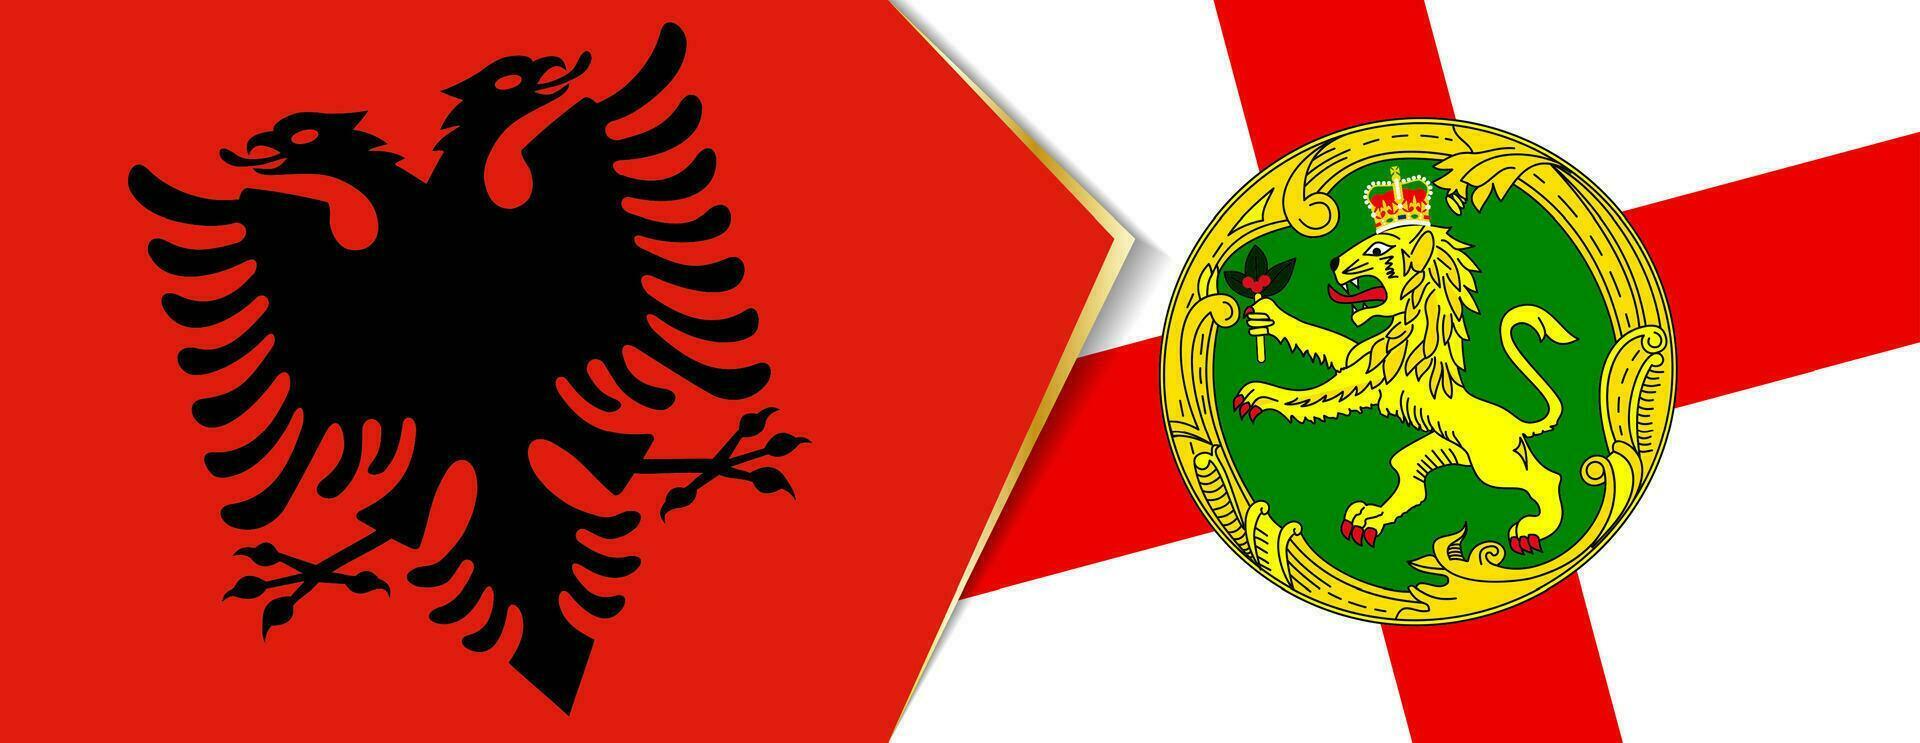 Albania e alderney bandiere, Due vettore bandiere.